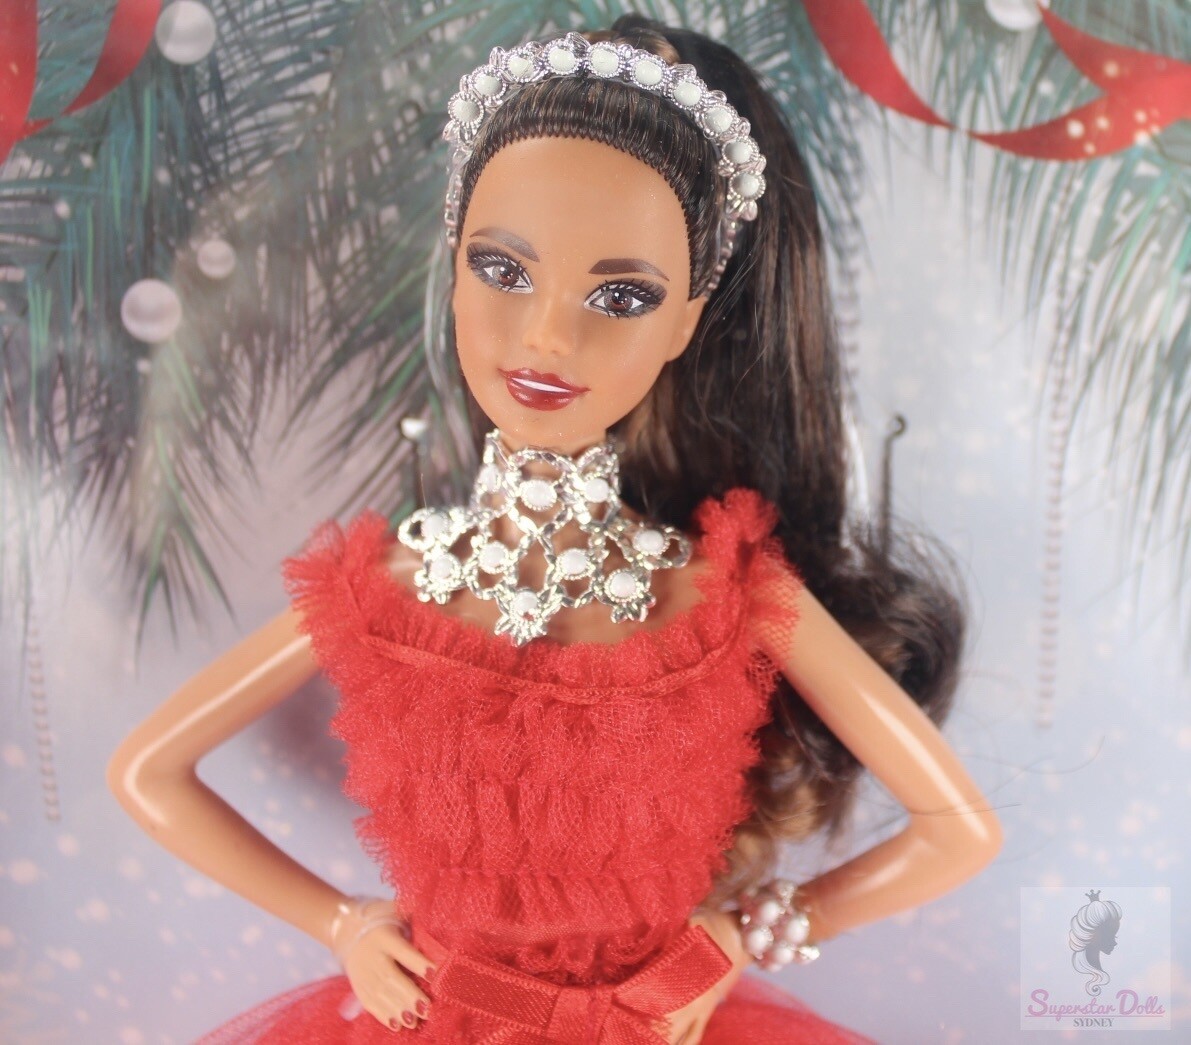 2018 Brunette Holiday Barbie Doll